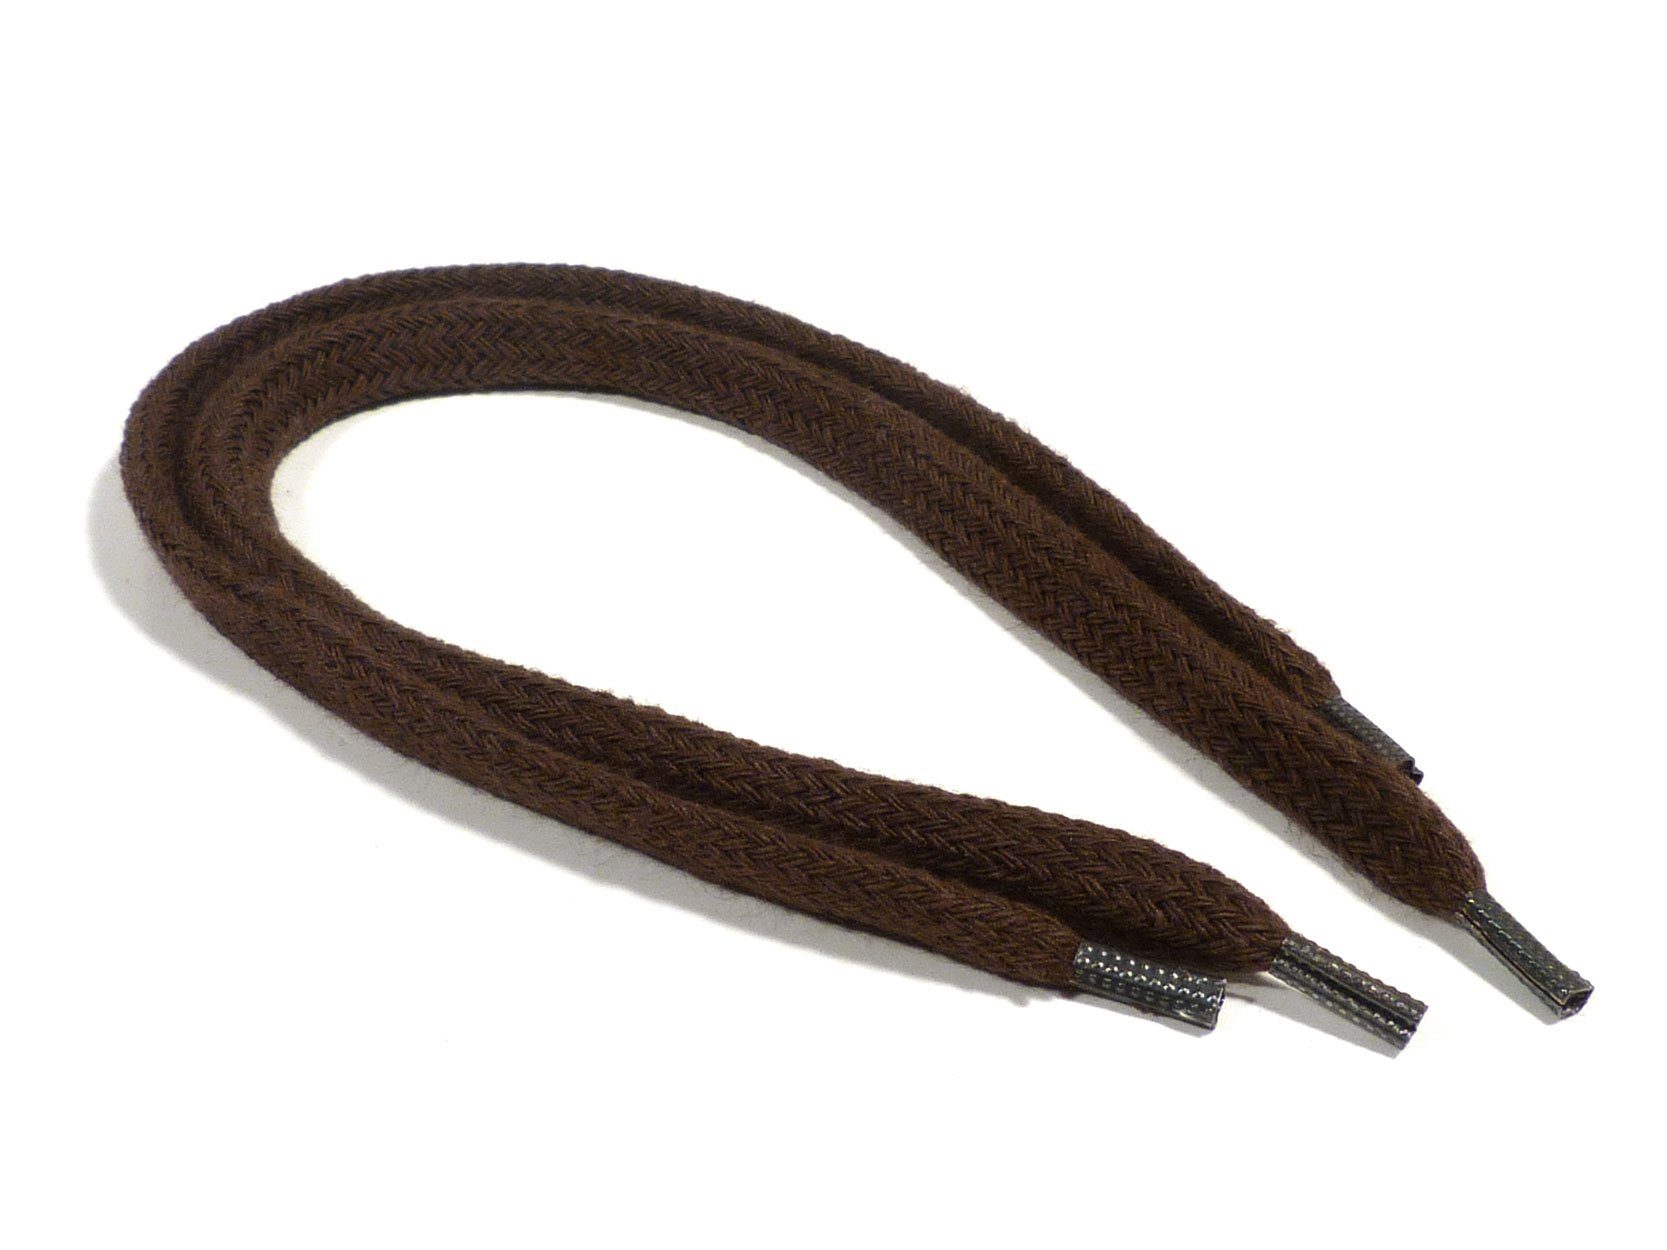 Rema Schnürsenkel Rema Schnürsenkel Dunkelbraun - flach - ca. 8-10 mm breit für Sie nach Wunschlänge geschnitten und mit Metallenden versehen